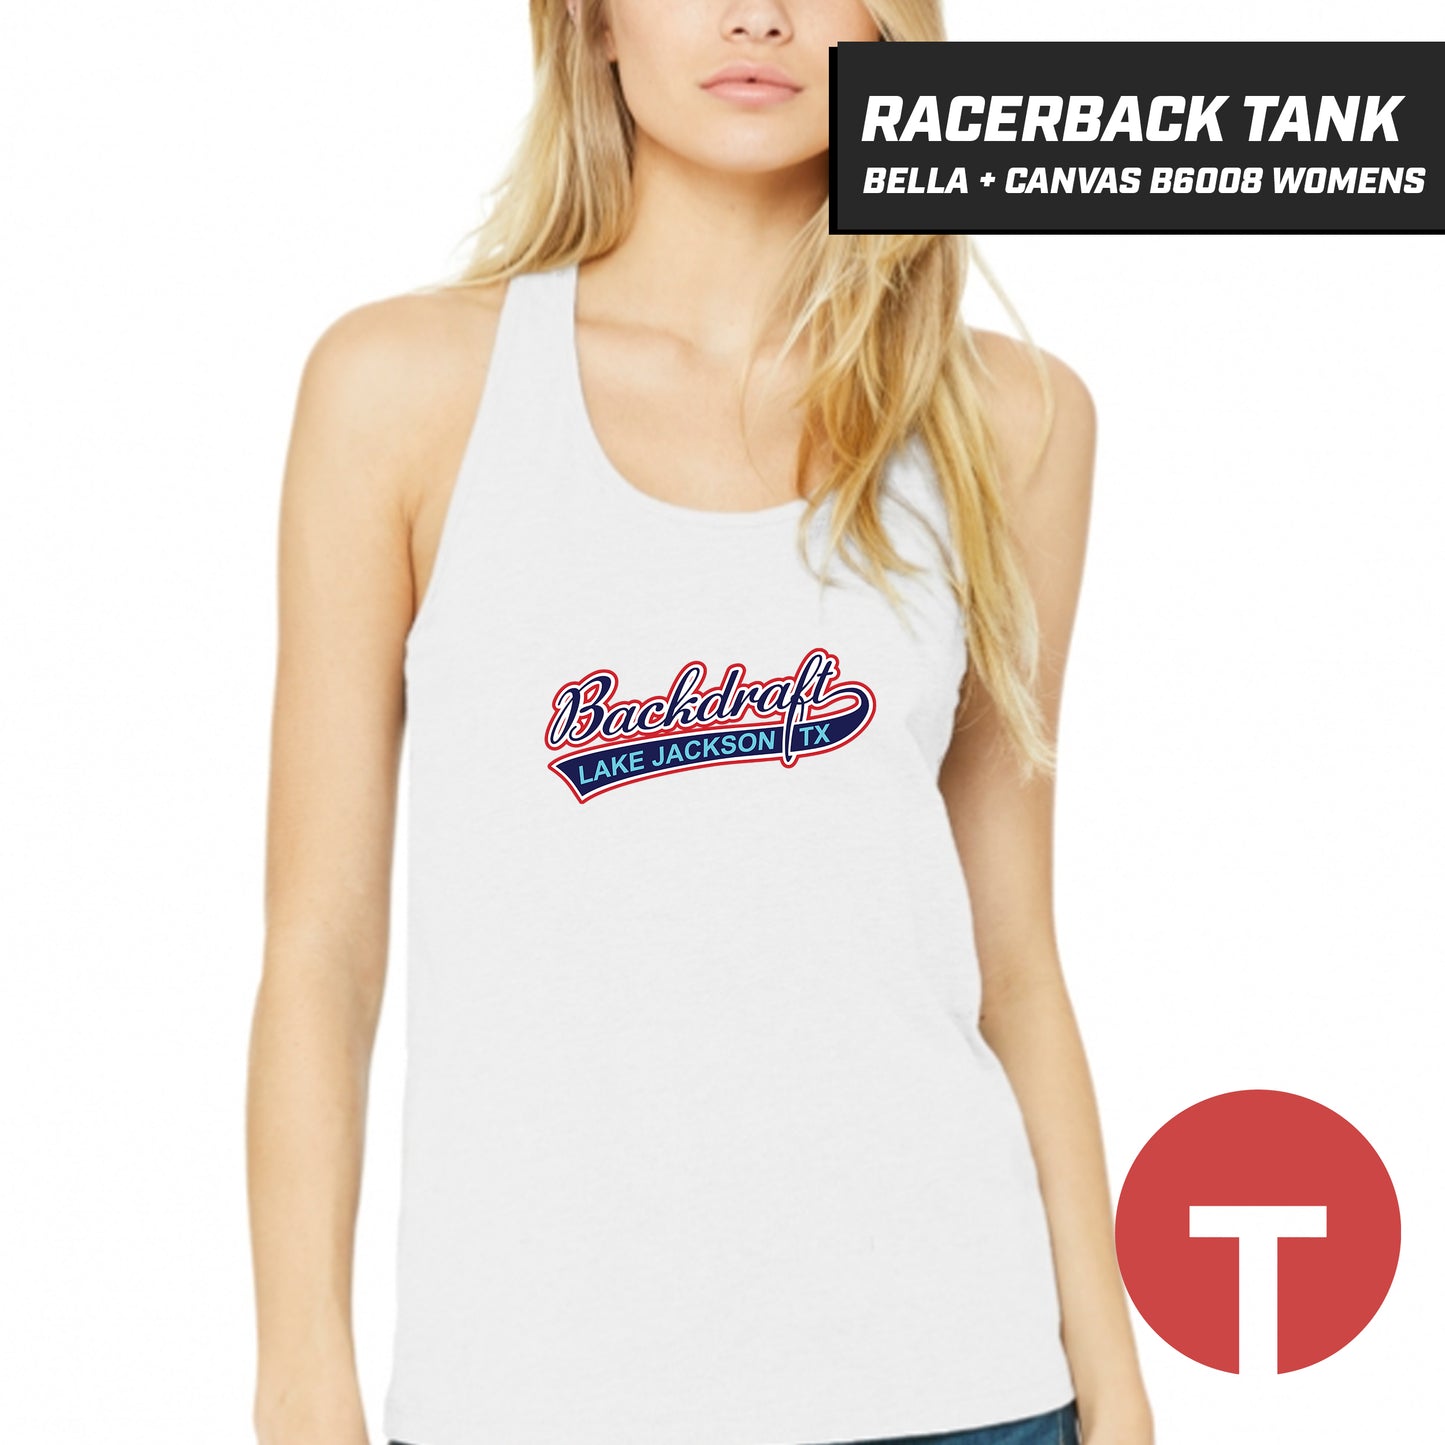 Backdraft - Bella + Canvas B6008 Women's Jersey Racerback Tank